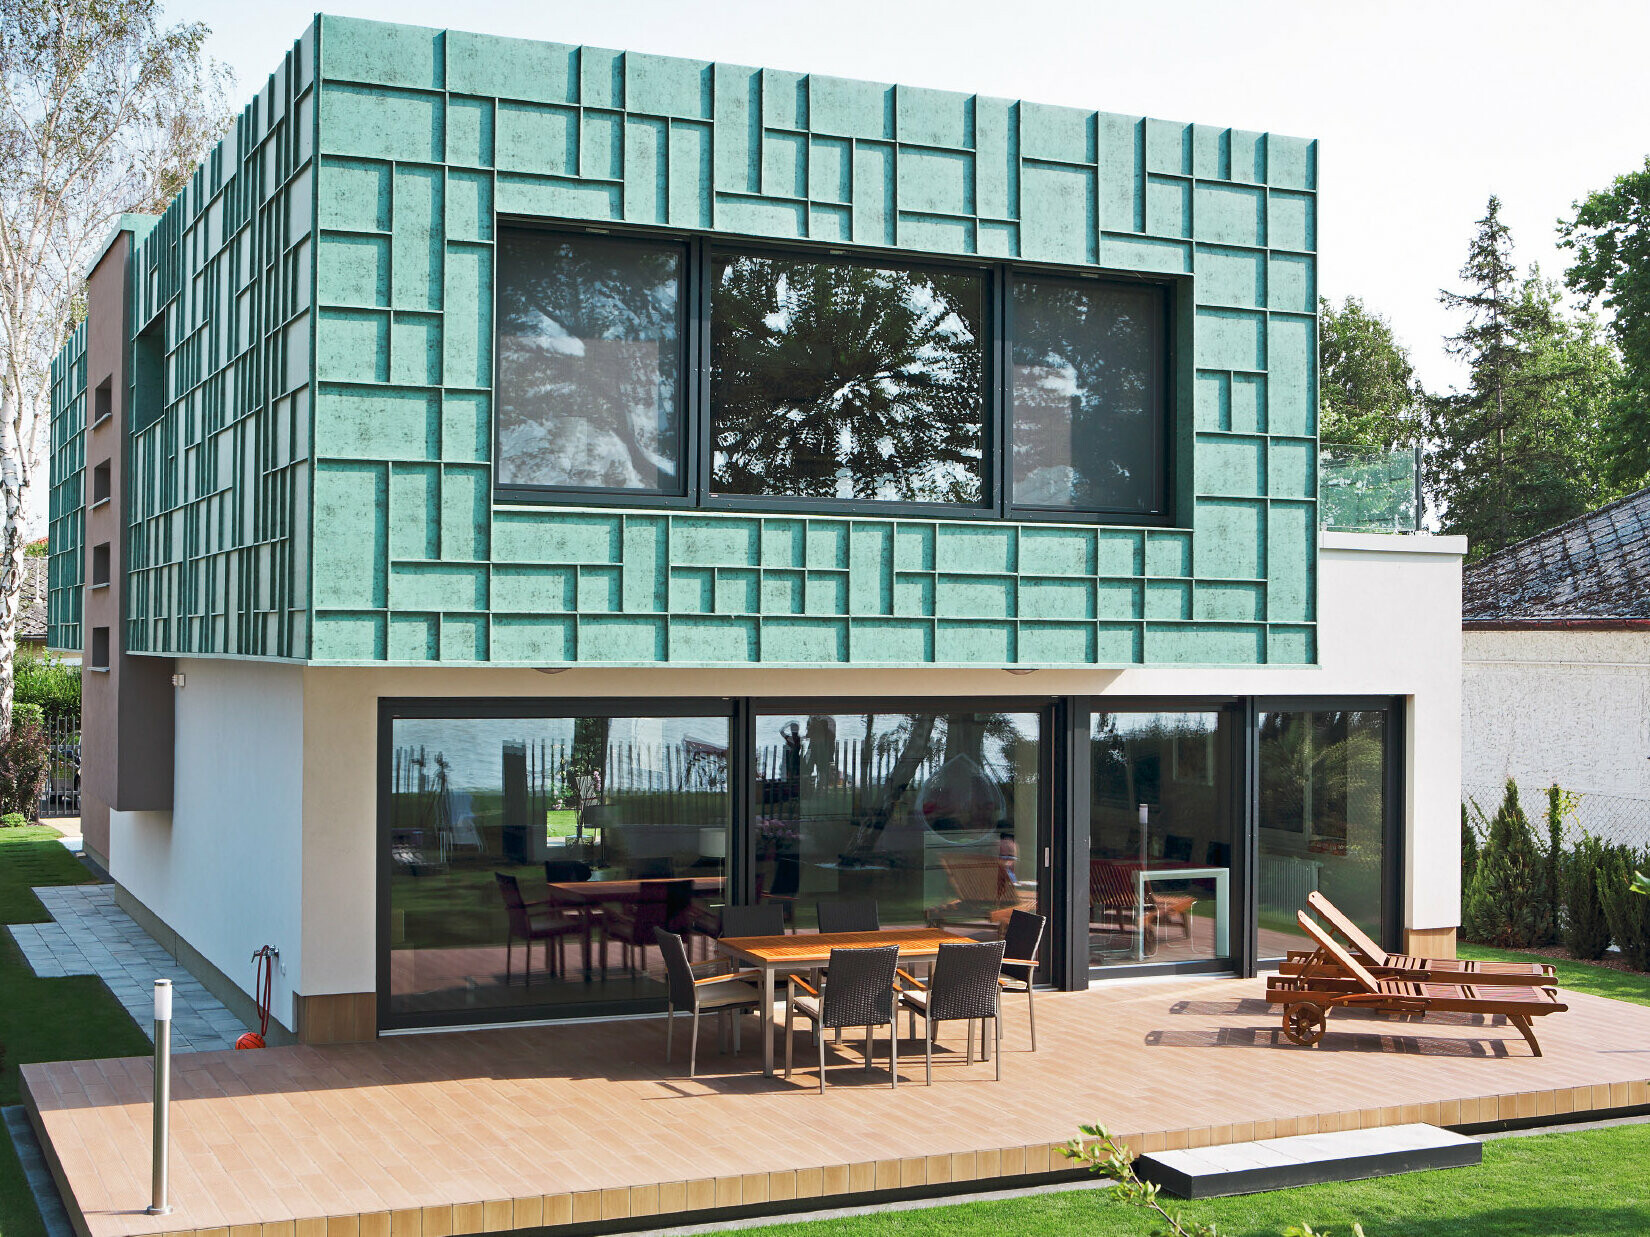 Moderný rodinný dom s fasádou odolnou voči víchrici, ktorá bola obložená systémom PREFALZ vo farebnom odtieni P.10 patina zelená.